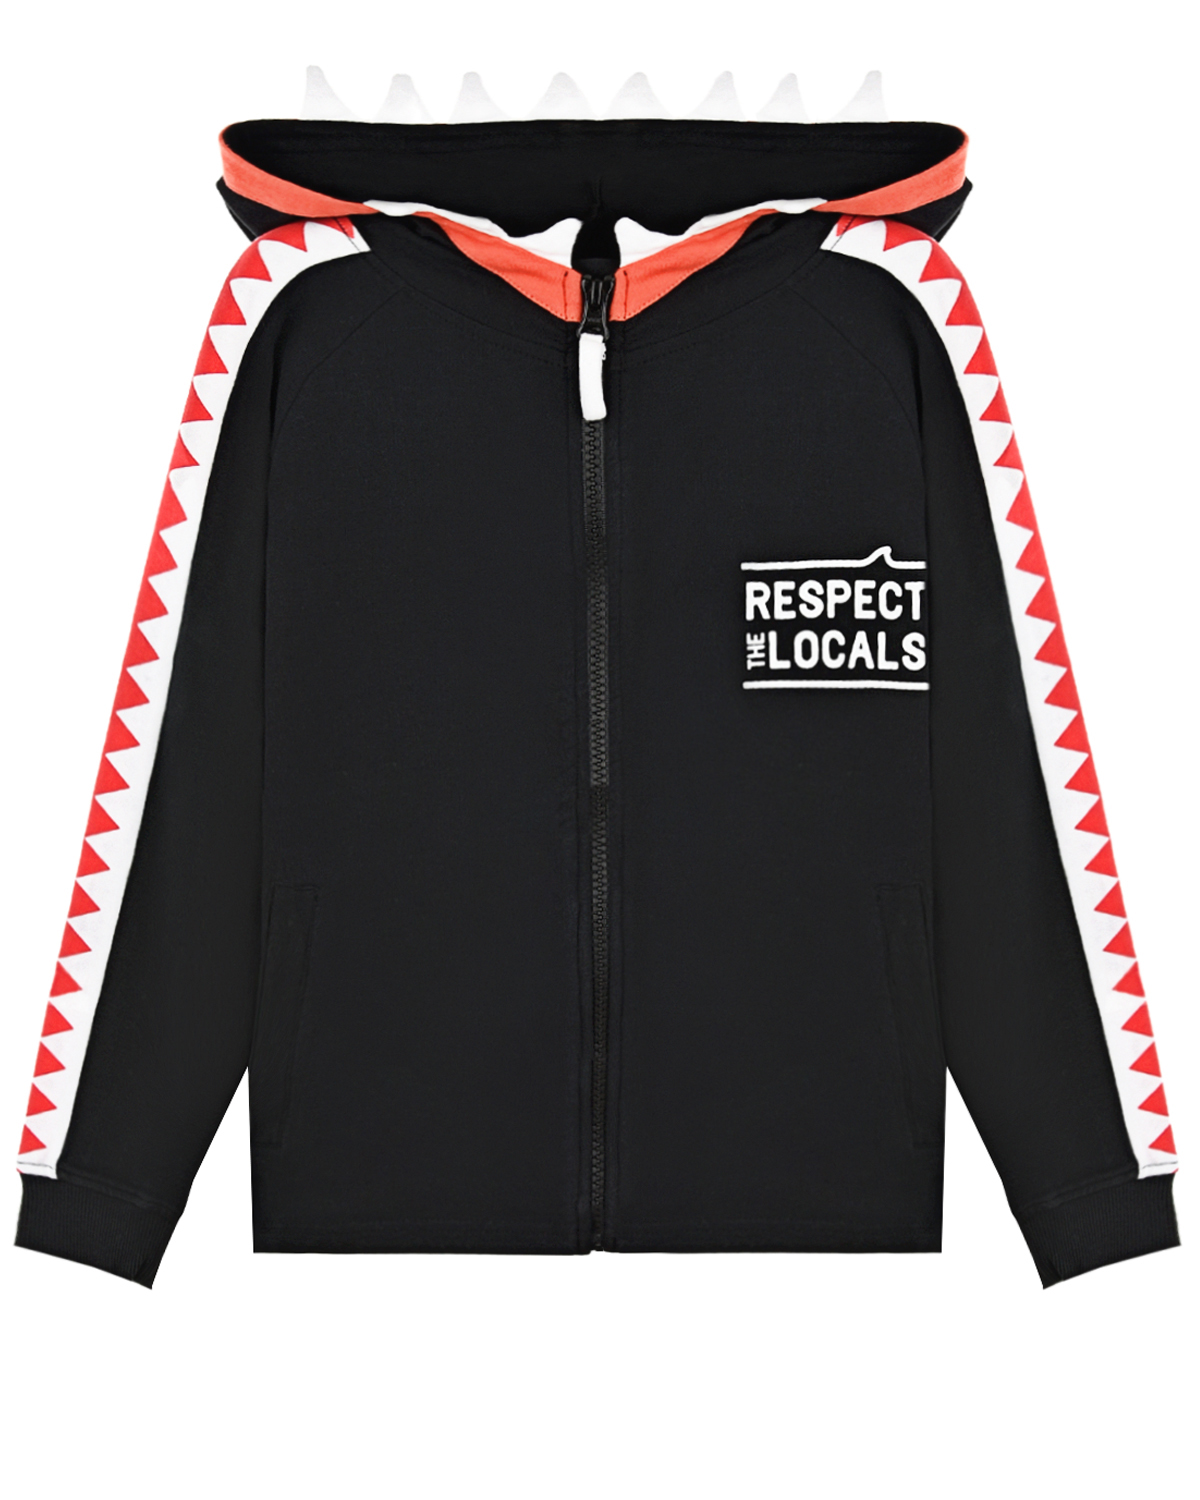 Спортивная куртка с принтом "Respect the locals" Yporque детская, размер 104, цвет черный - фото 1